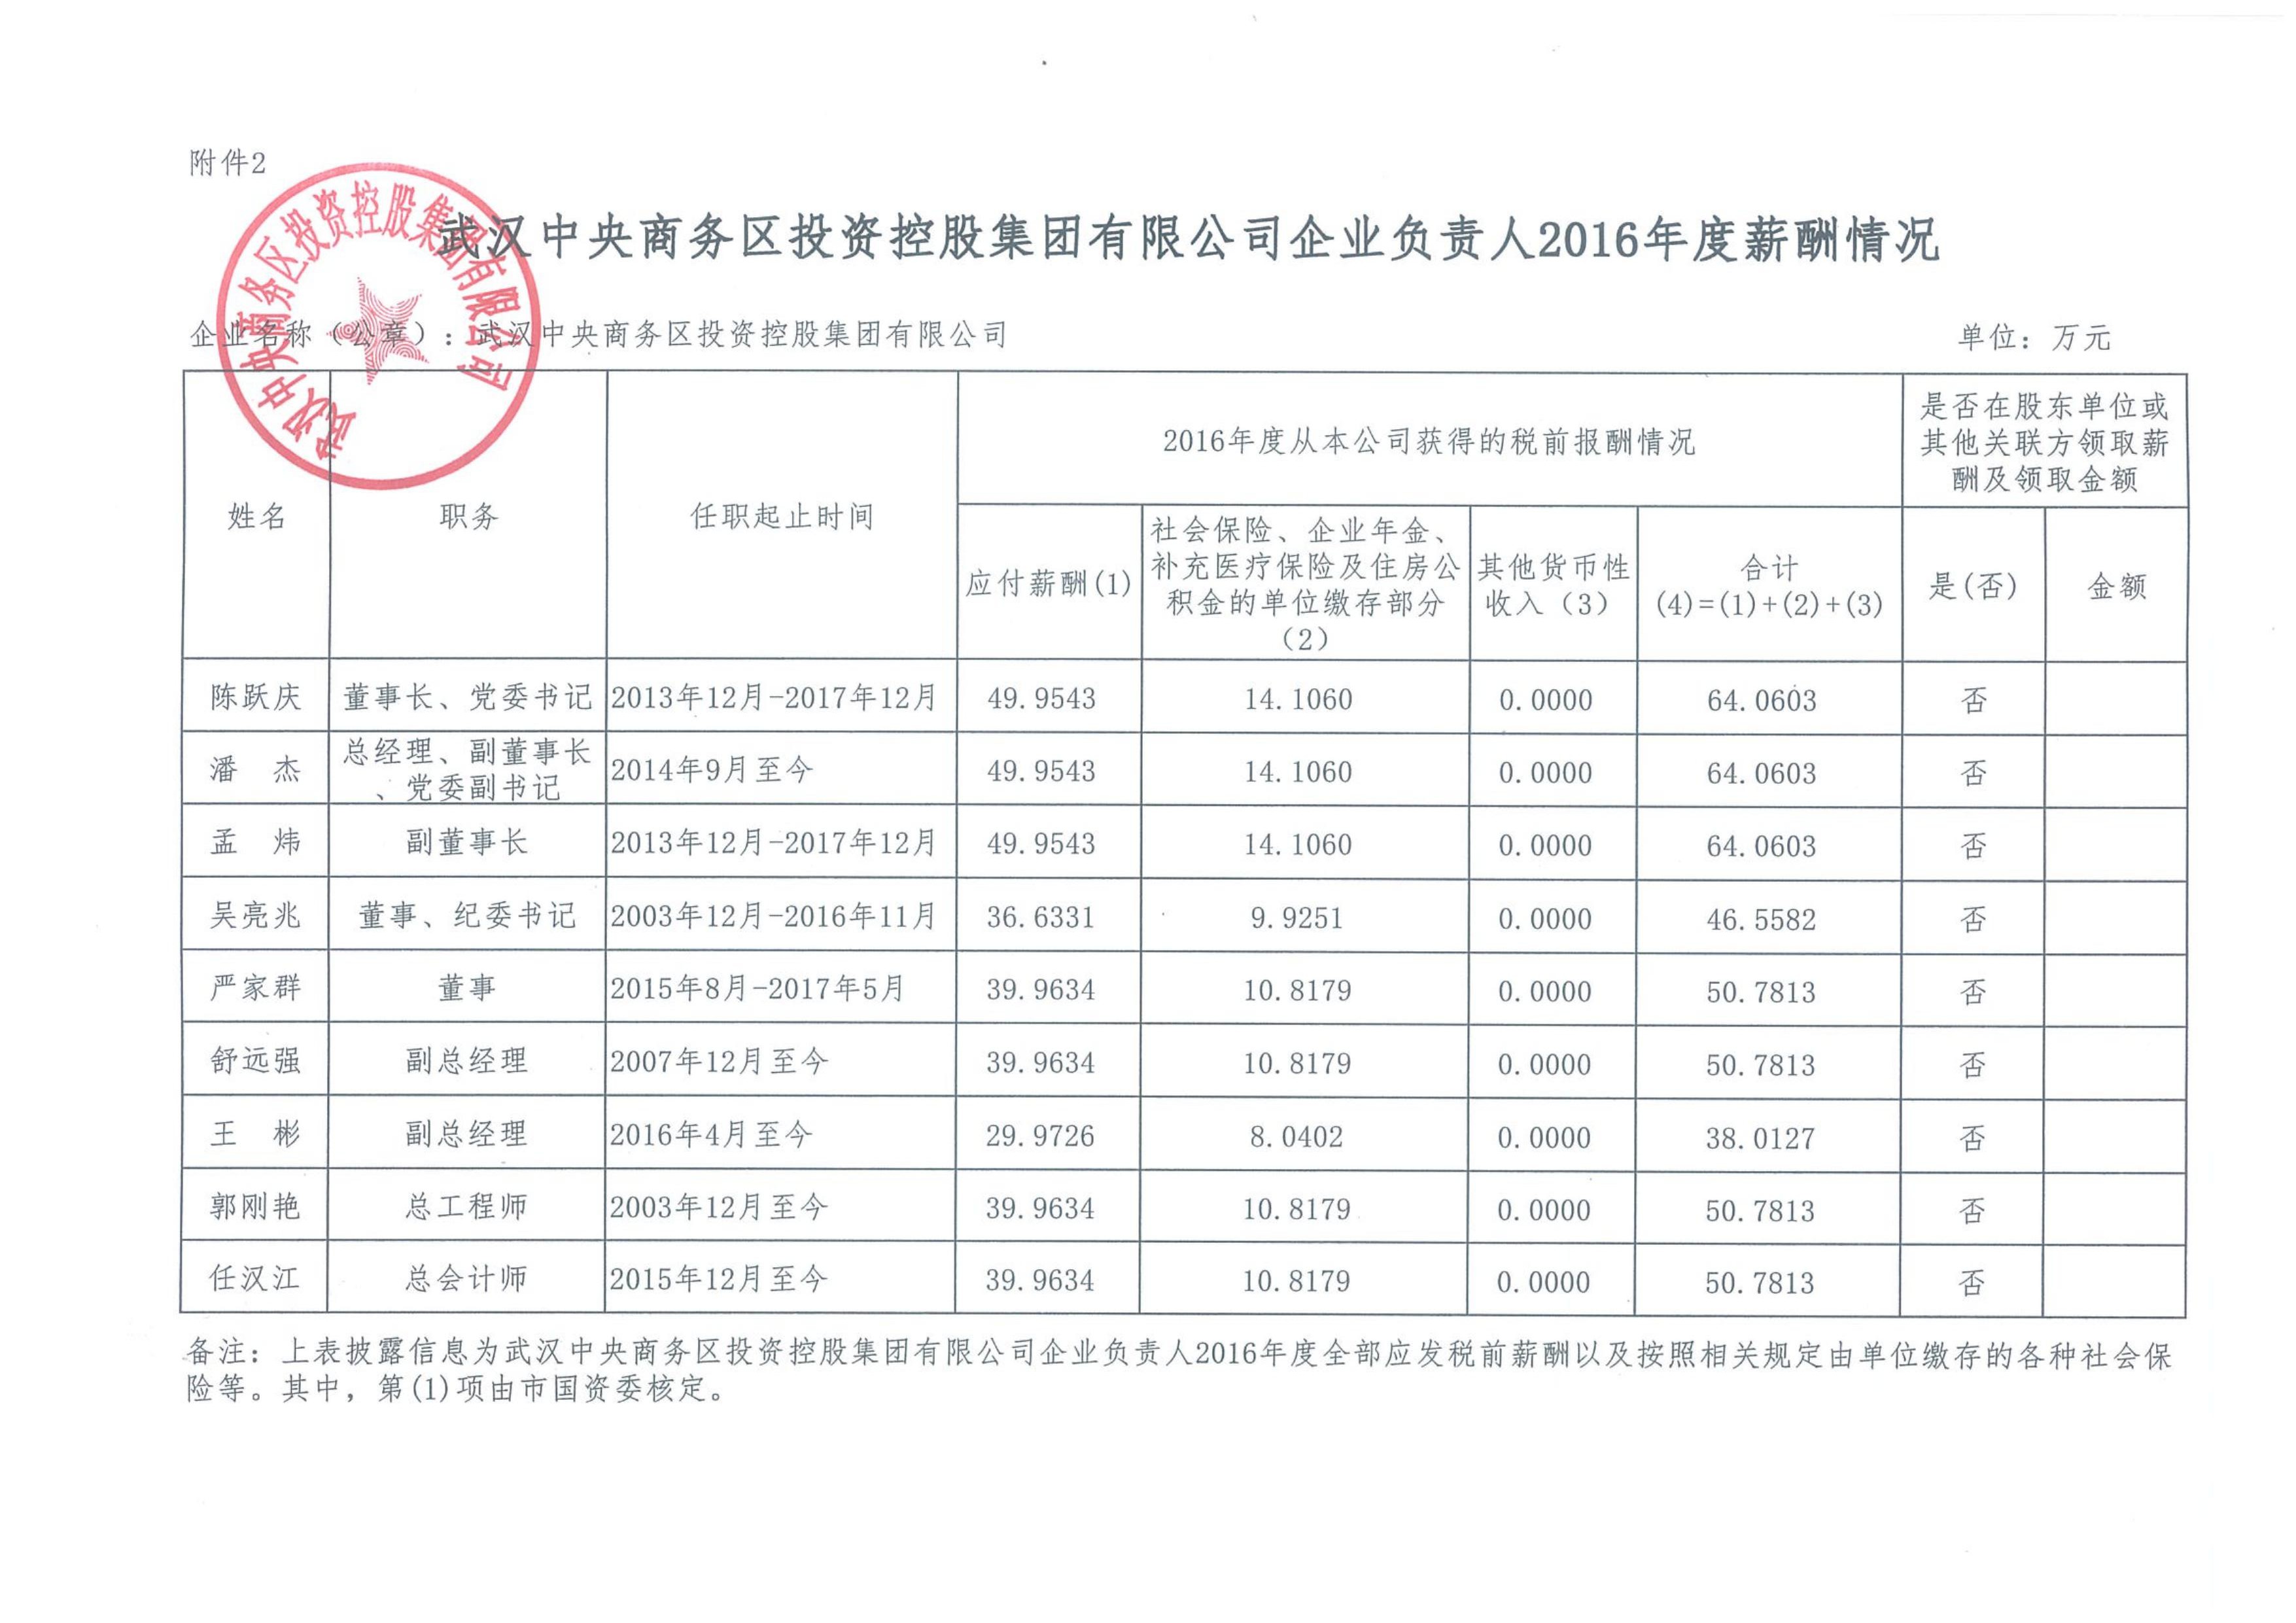 武汉中央商务区投资控股集团有限公司企业负责人2016年度薪酬情况